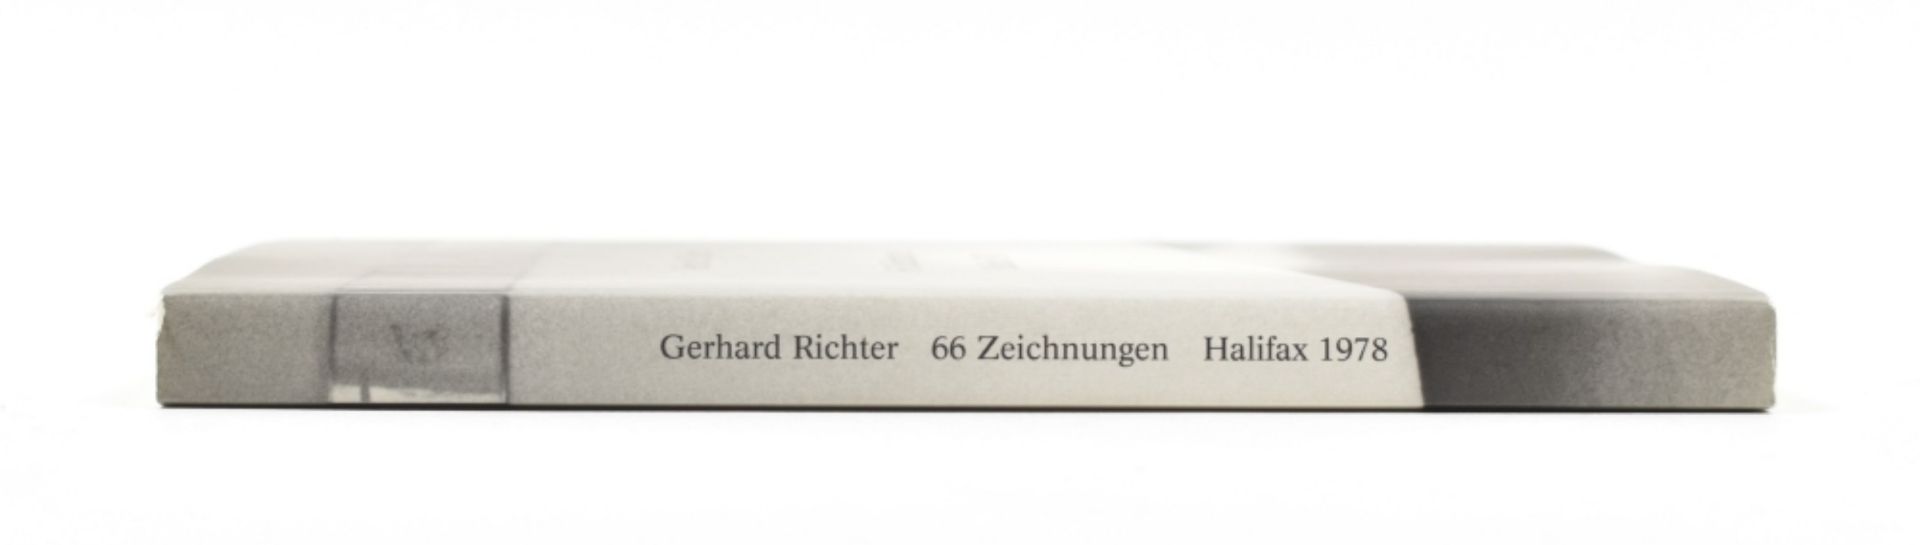 [s and 1970s] Gerhard Richter, 66 Zeichnungen Halifax 1978 - Image 2 of 6